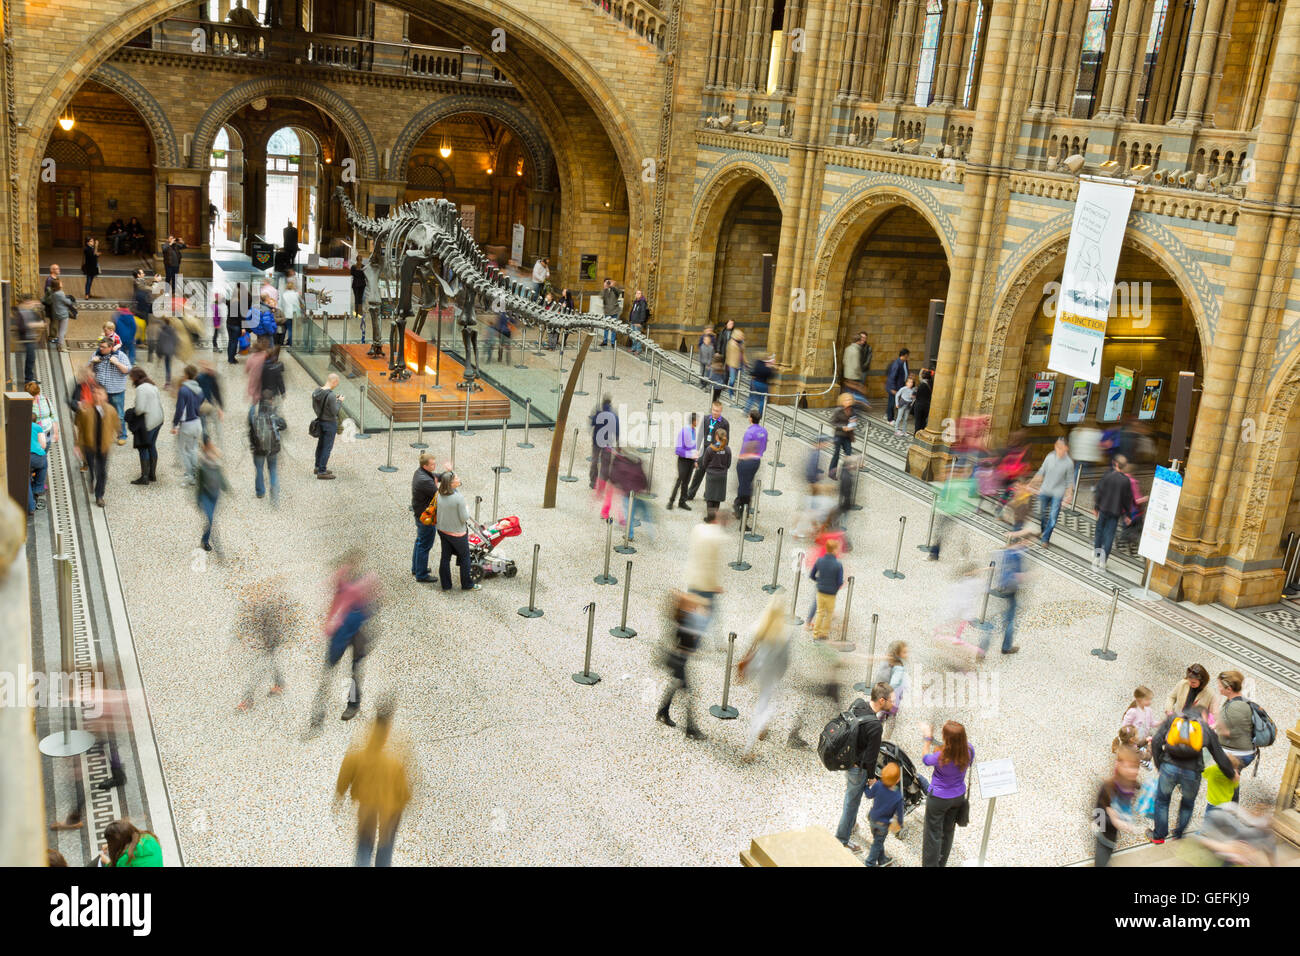 Londres, Reino Unido - 28 de abril de 2013: Los visitantes en el vestíbulo de la entrada principal al Museo de Historia Natural de Londres. Foto de stock